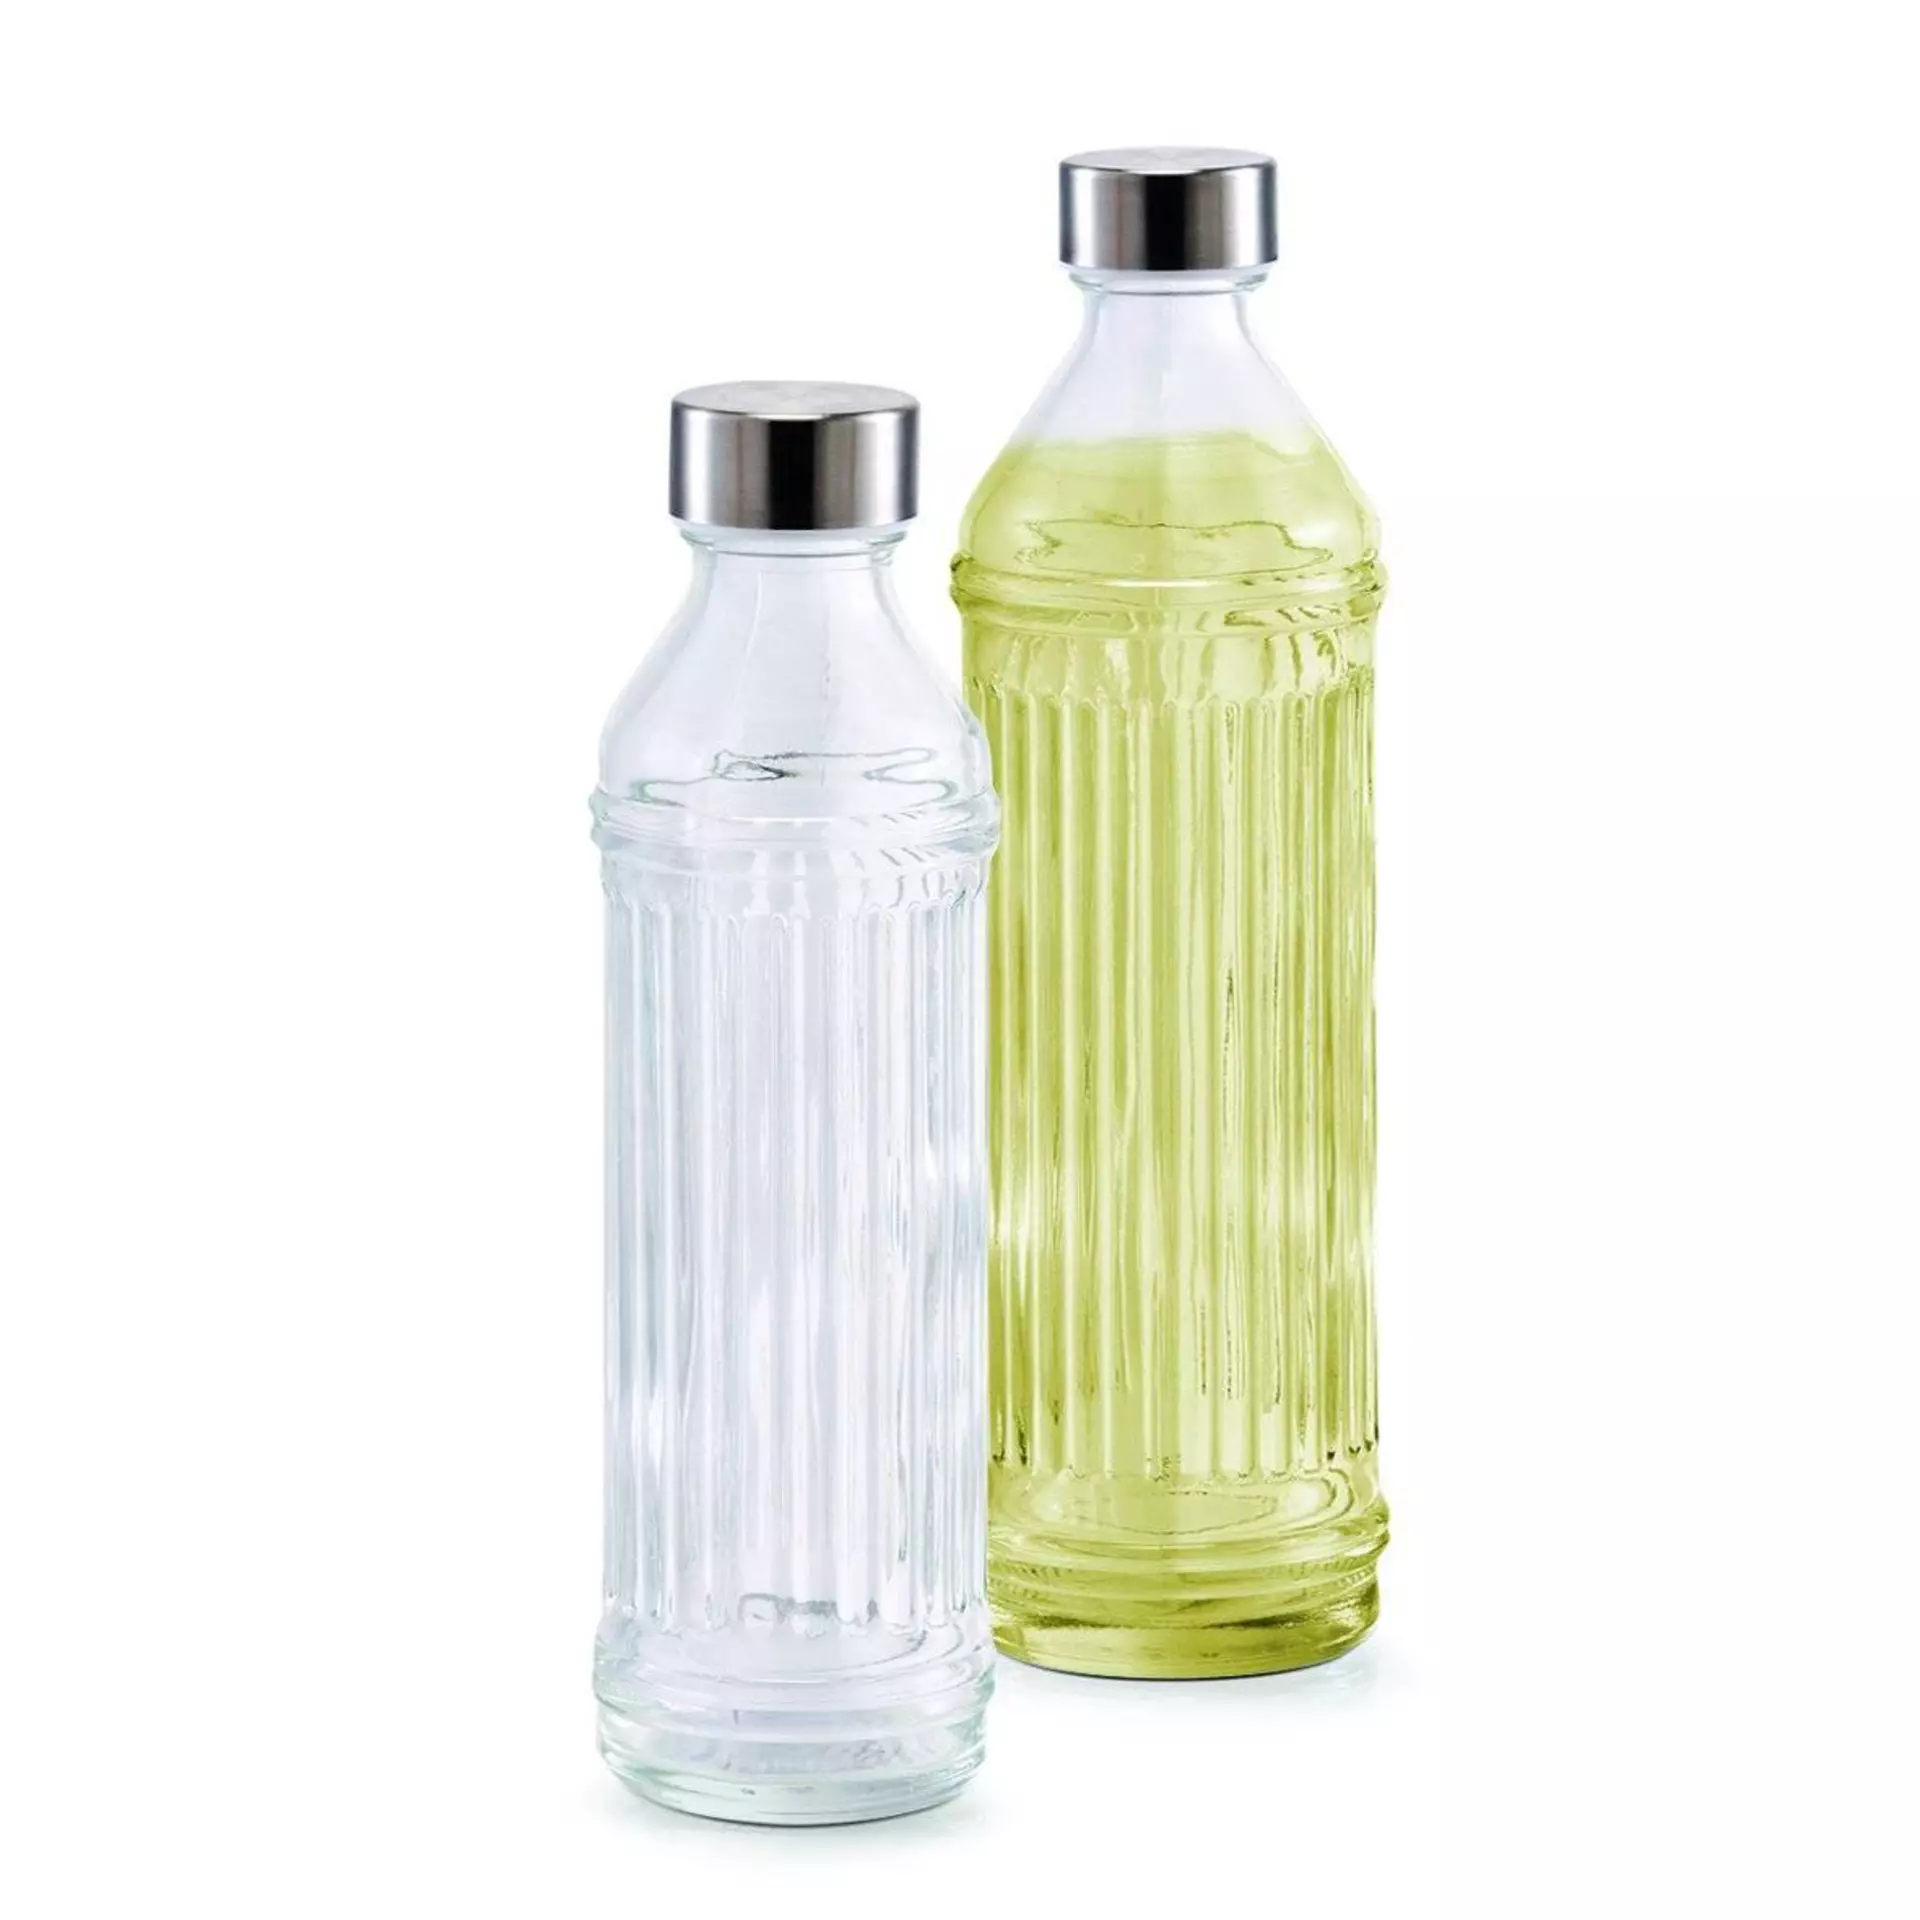 Trinkflasche Zeller Present Glas 8 x 29 x 